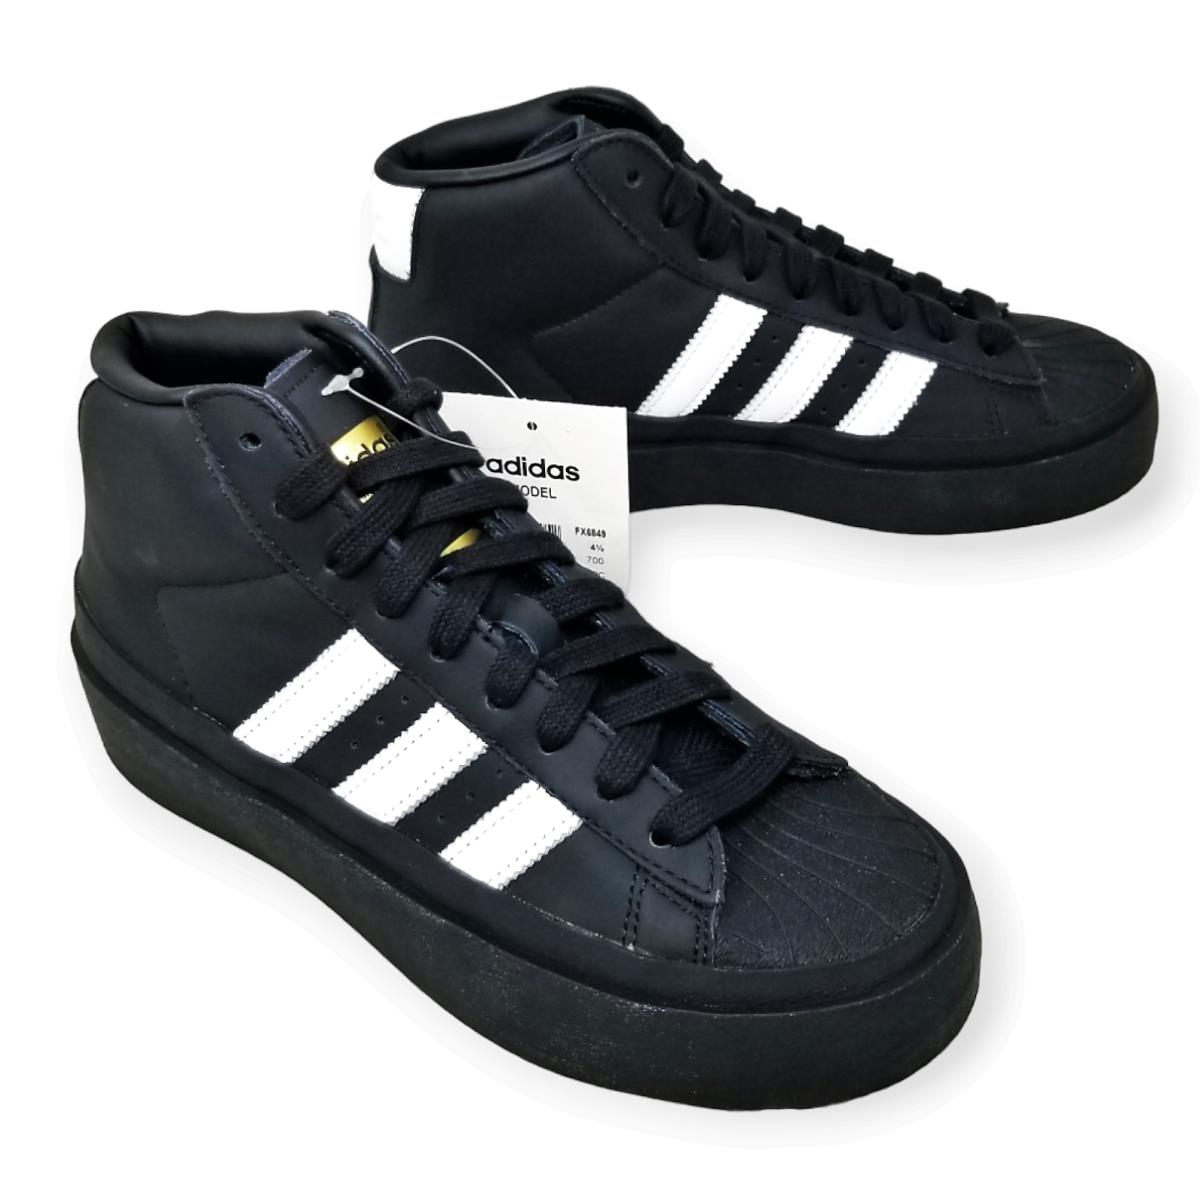 Adidas 424 Pro Model Leather Men`s Shoes Core Black FX6849 - Size 5 Eur 37.5 - Black